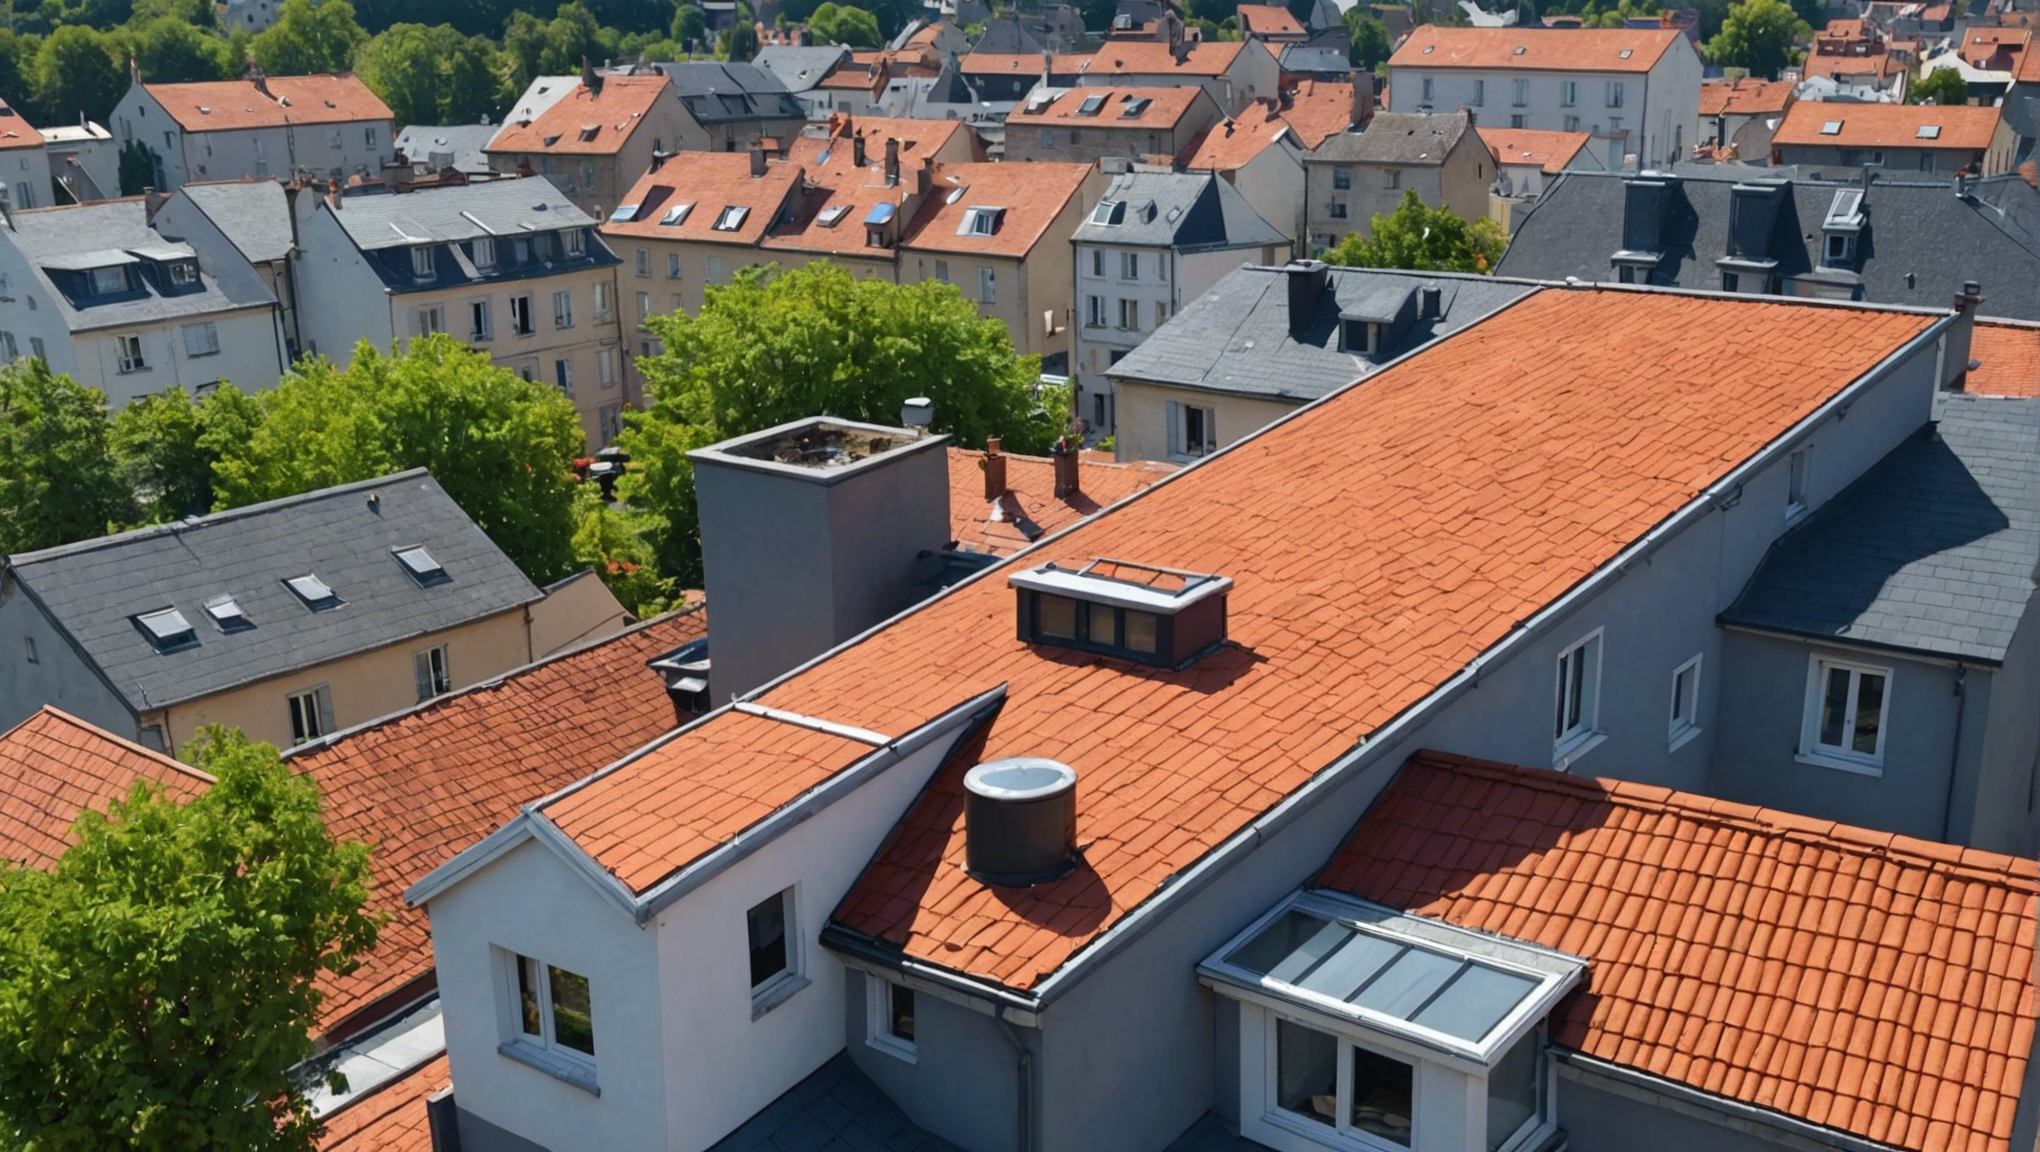 découvrez comment renforcer l'isolation de votre toiture à saint-étienne et améliorer le confort de votre habitation avec nos conseils d'experts.